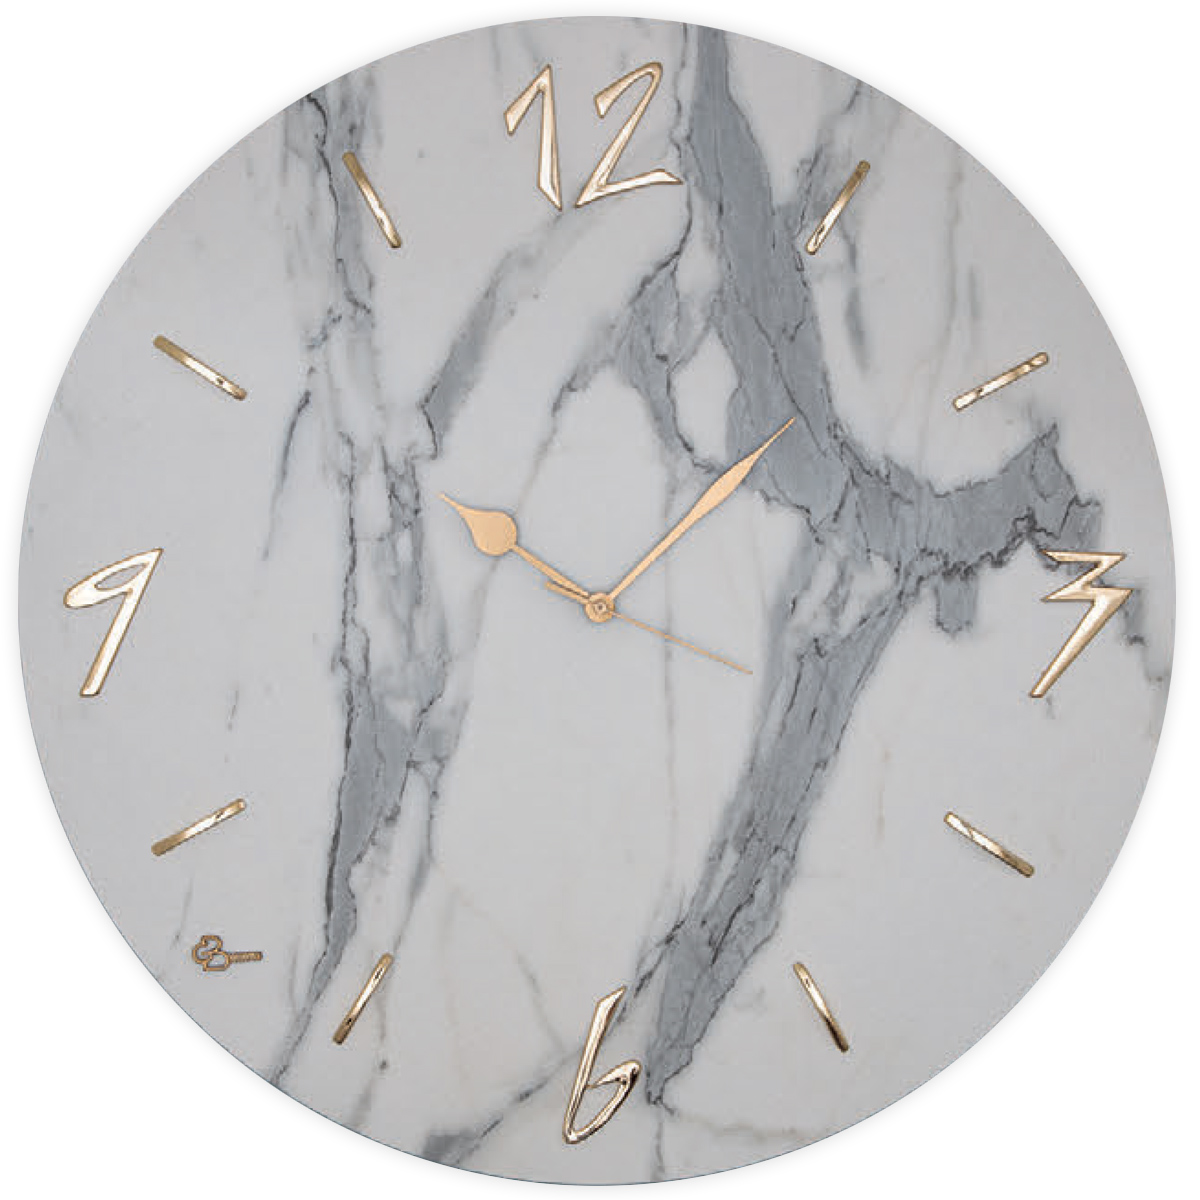 Orologio da parete effetto marmo, orologio di classe, imitazione marmo,  orologio tendenza, orologio moderno, orologio con numeri -  Italia